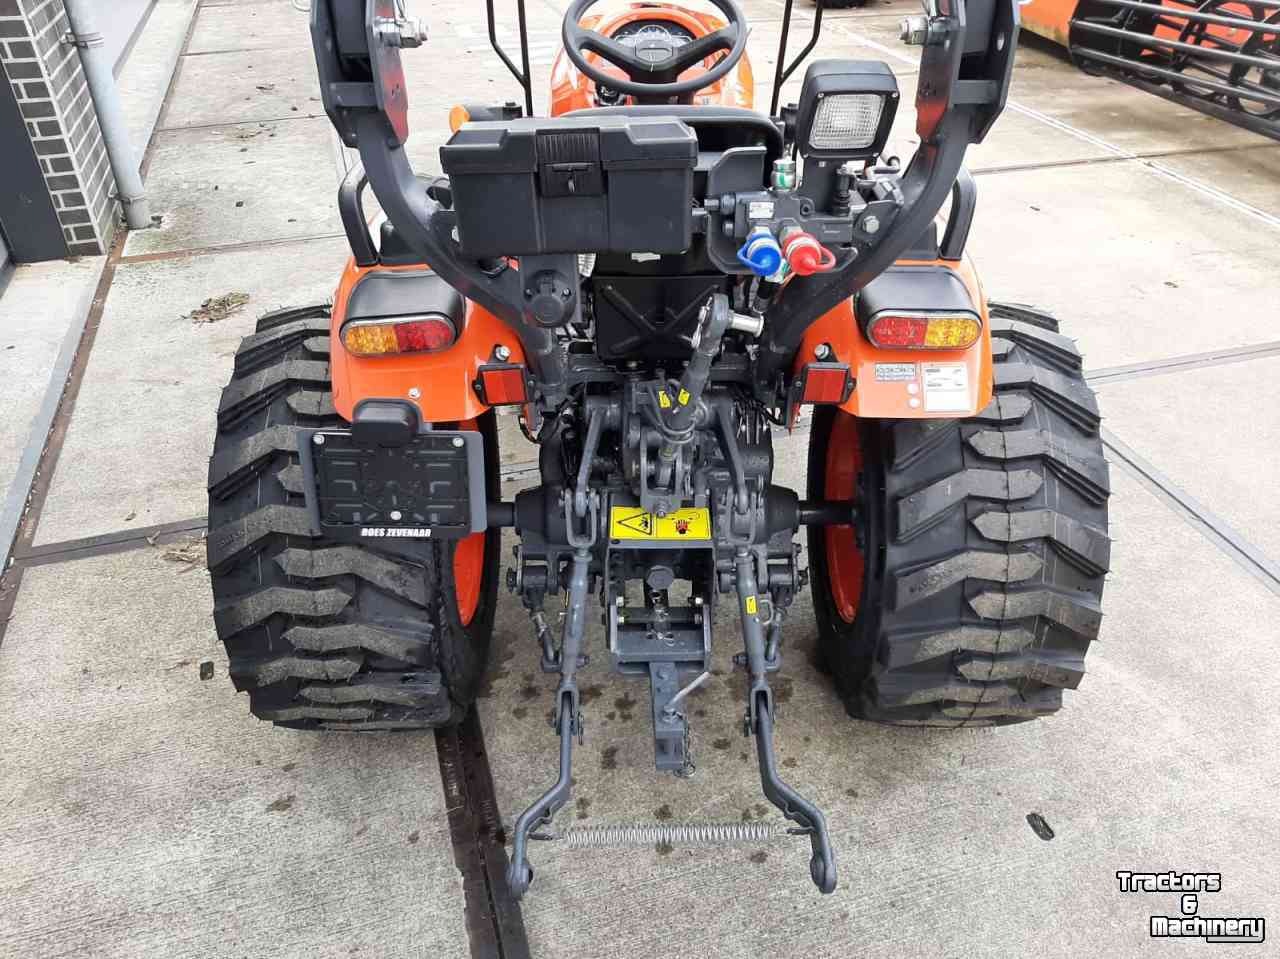 Tracteur pour horticulture Kubota EK261DT compact traktor